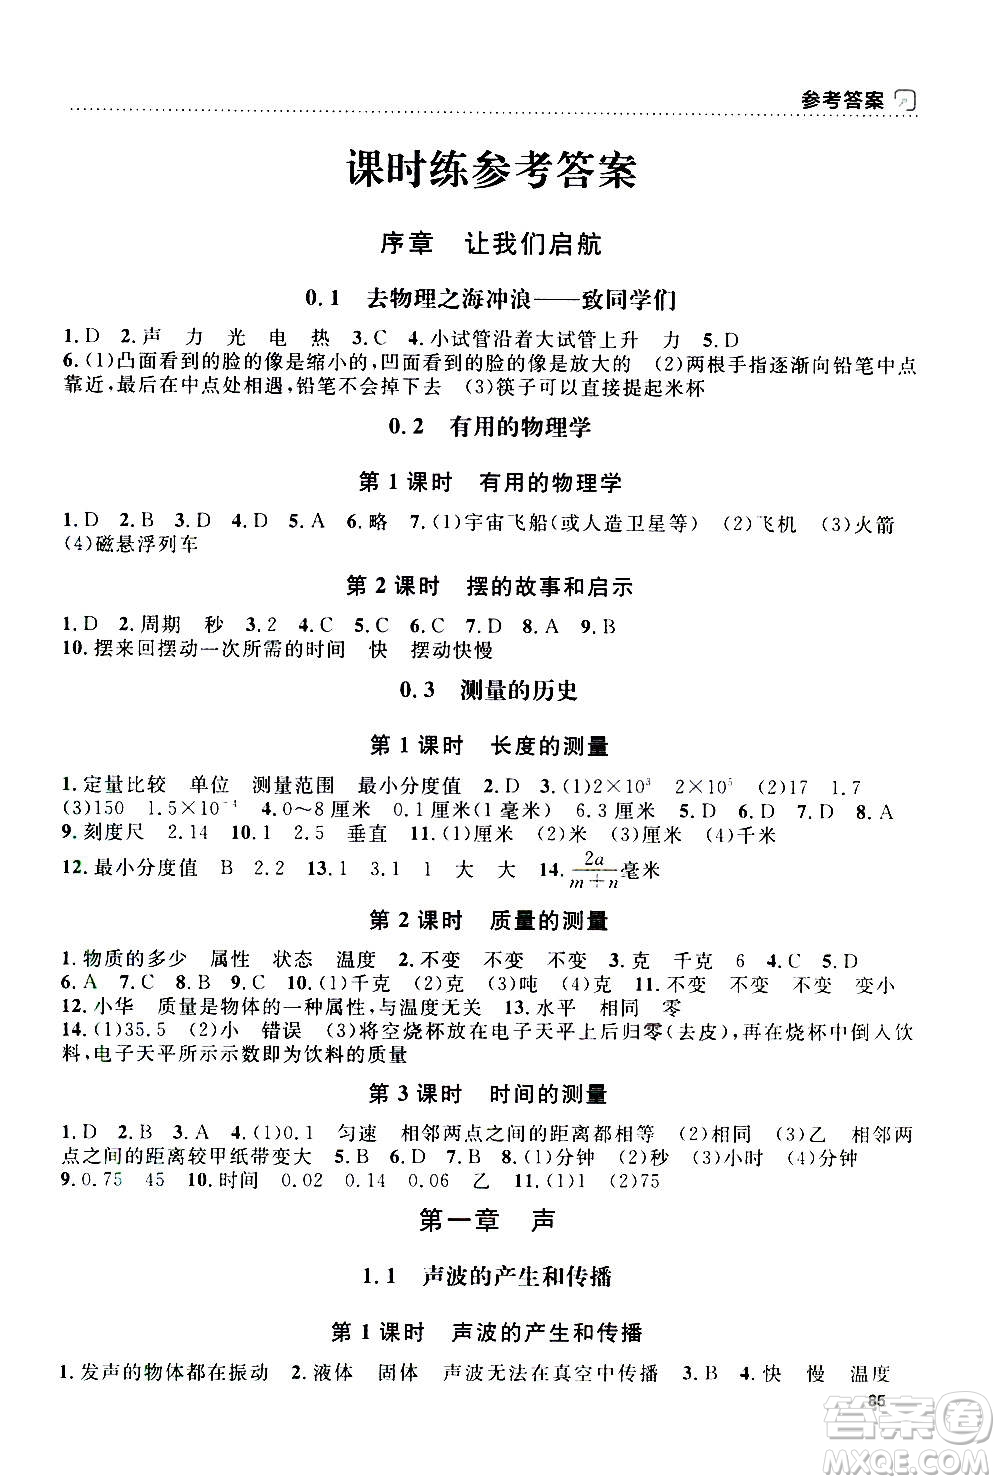 上海大学出版社2020年钟书金牌上海作业物理八年级上册答案